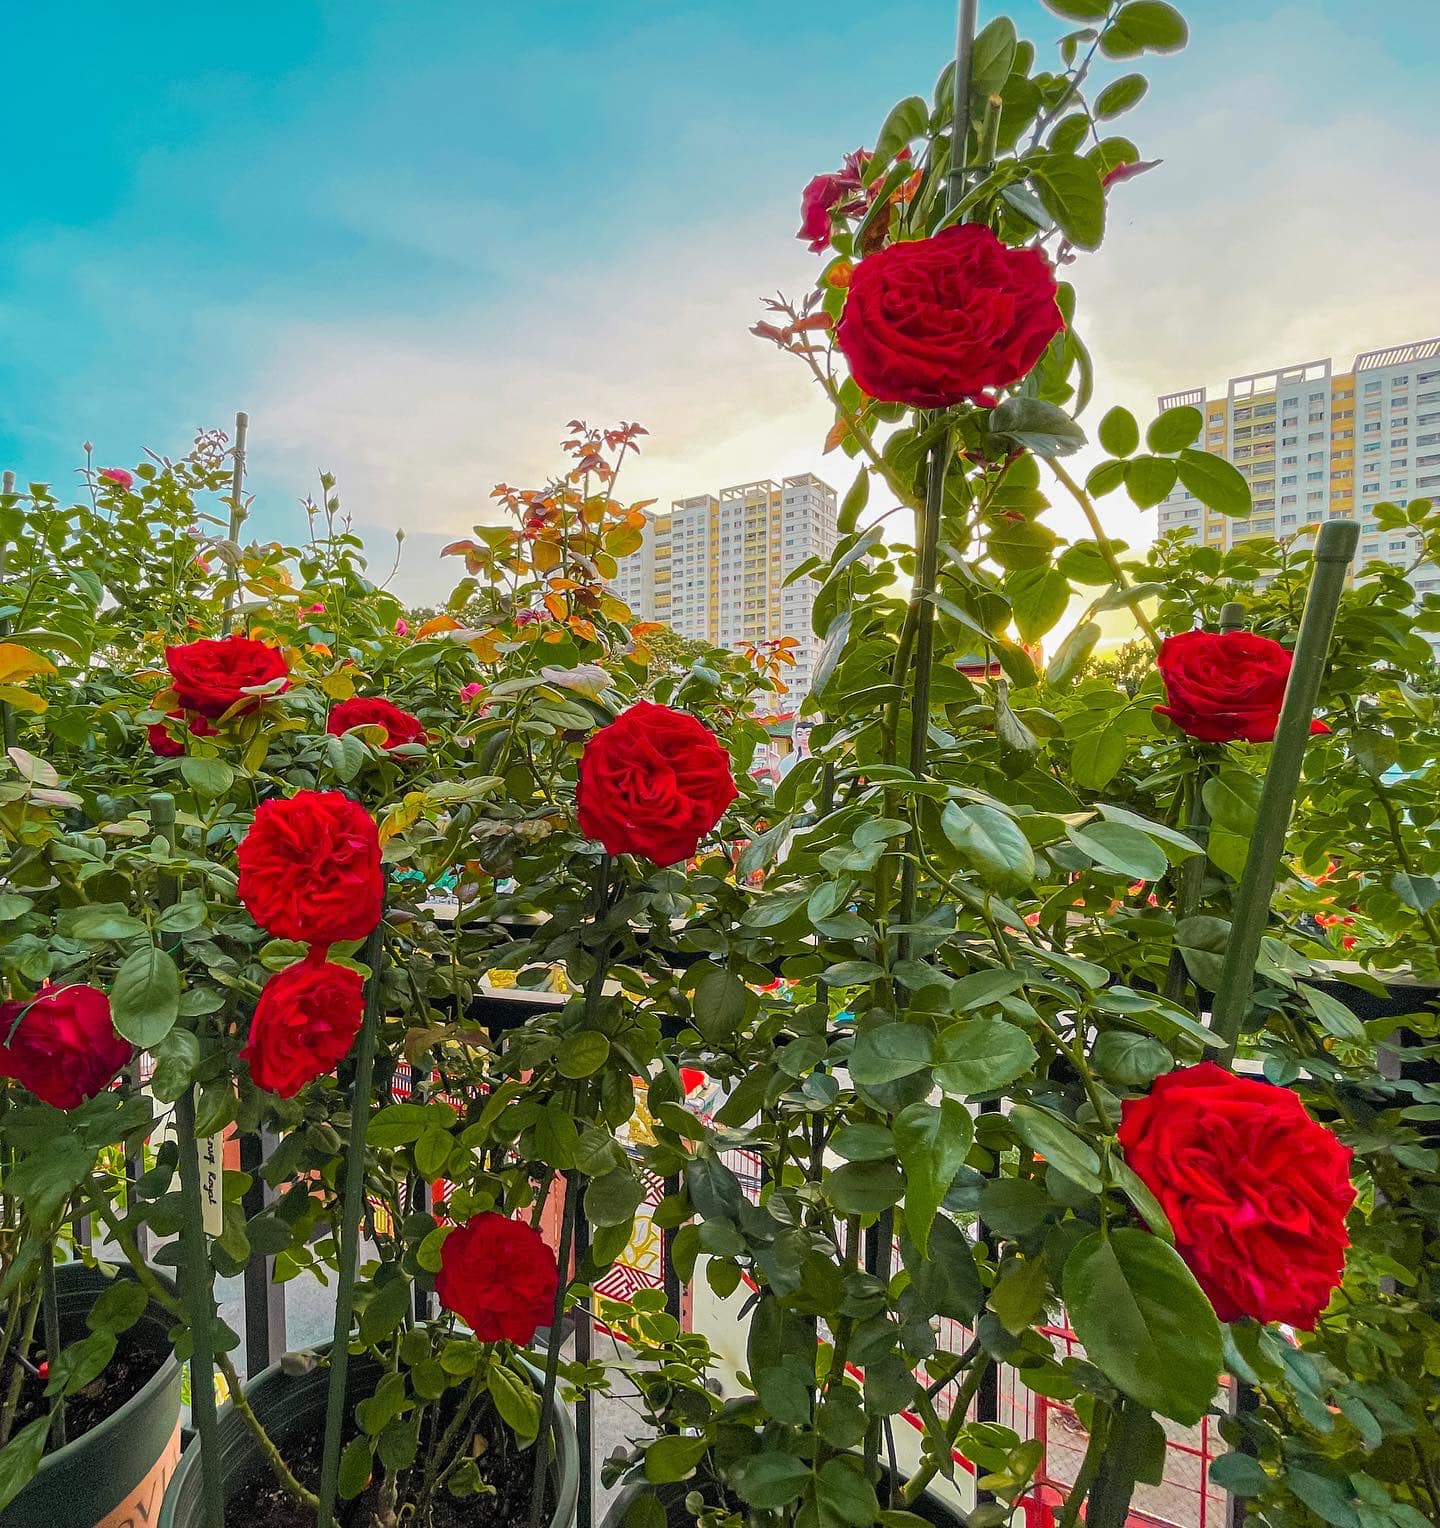 Khu vườn hoa hồng đẹp ngây ngất trên sân thượng ở TP HCM - Ảnh 17.